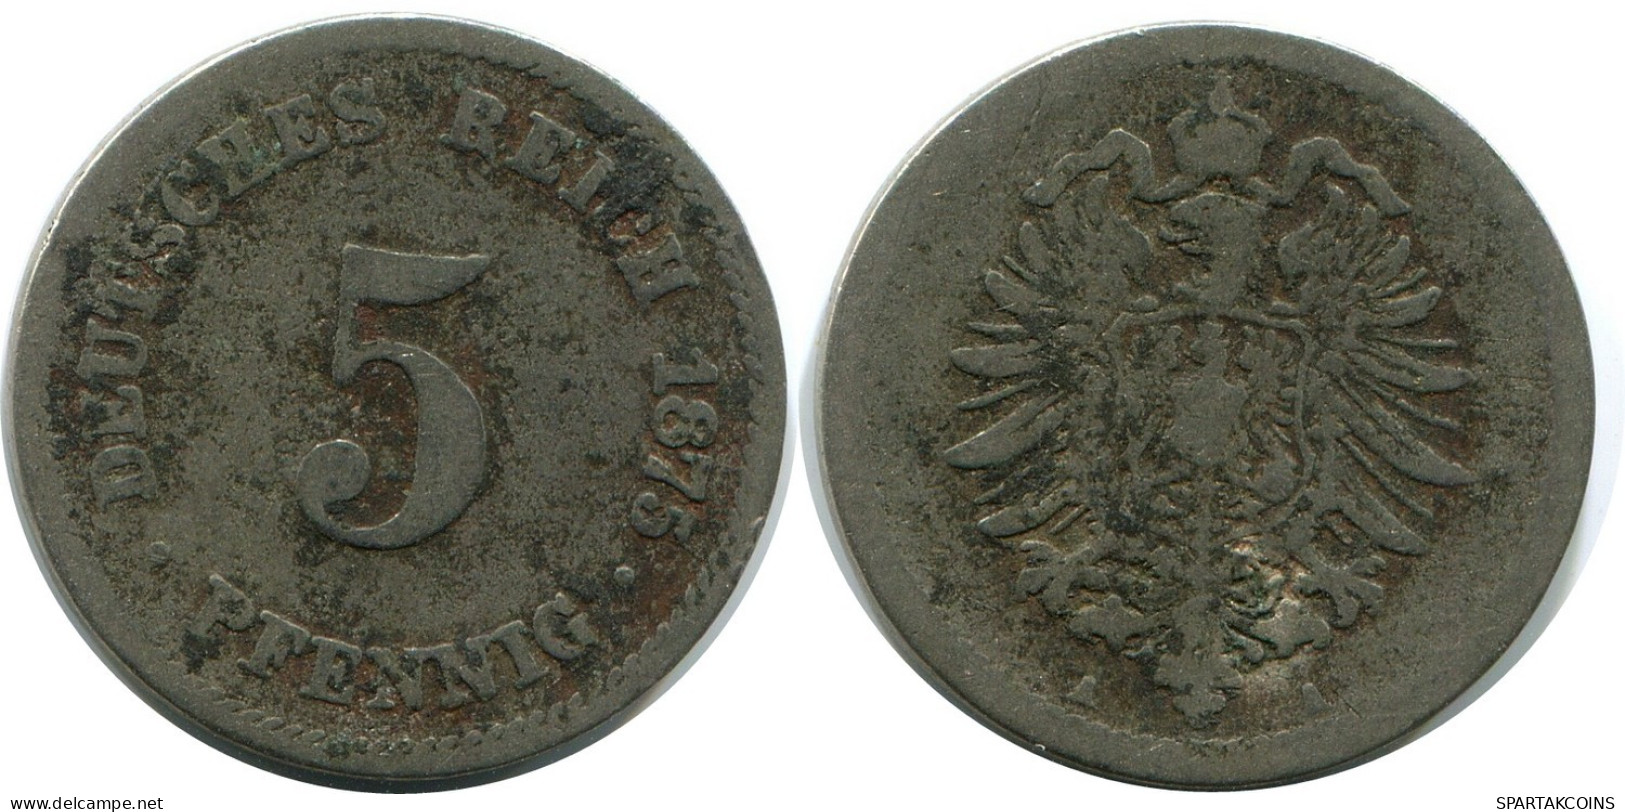 5 PFENNIG 1875 A GERMANY Coin #DB173.U.A - 5 Pfennig